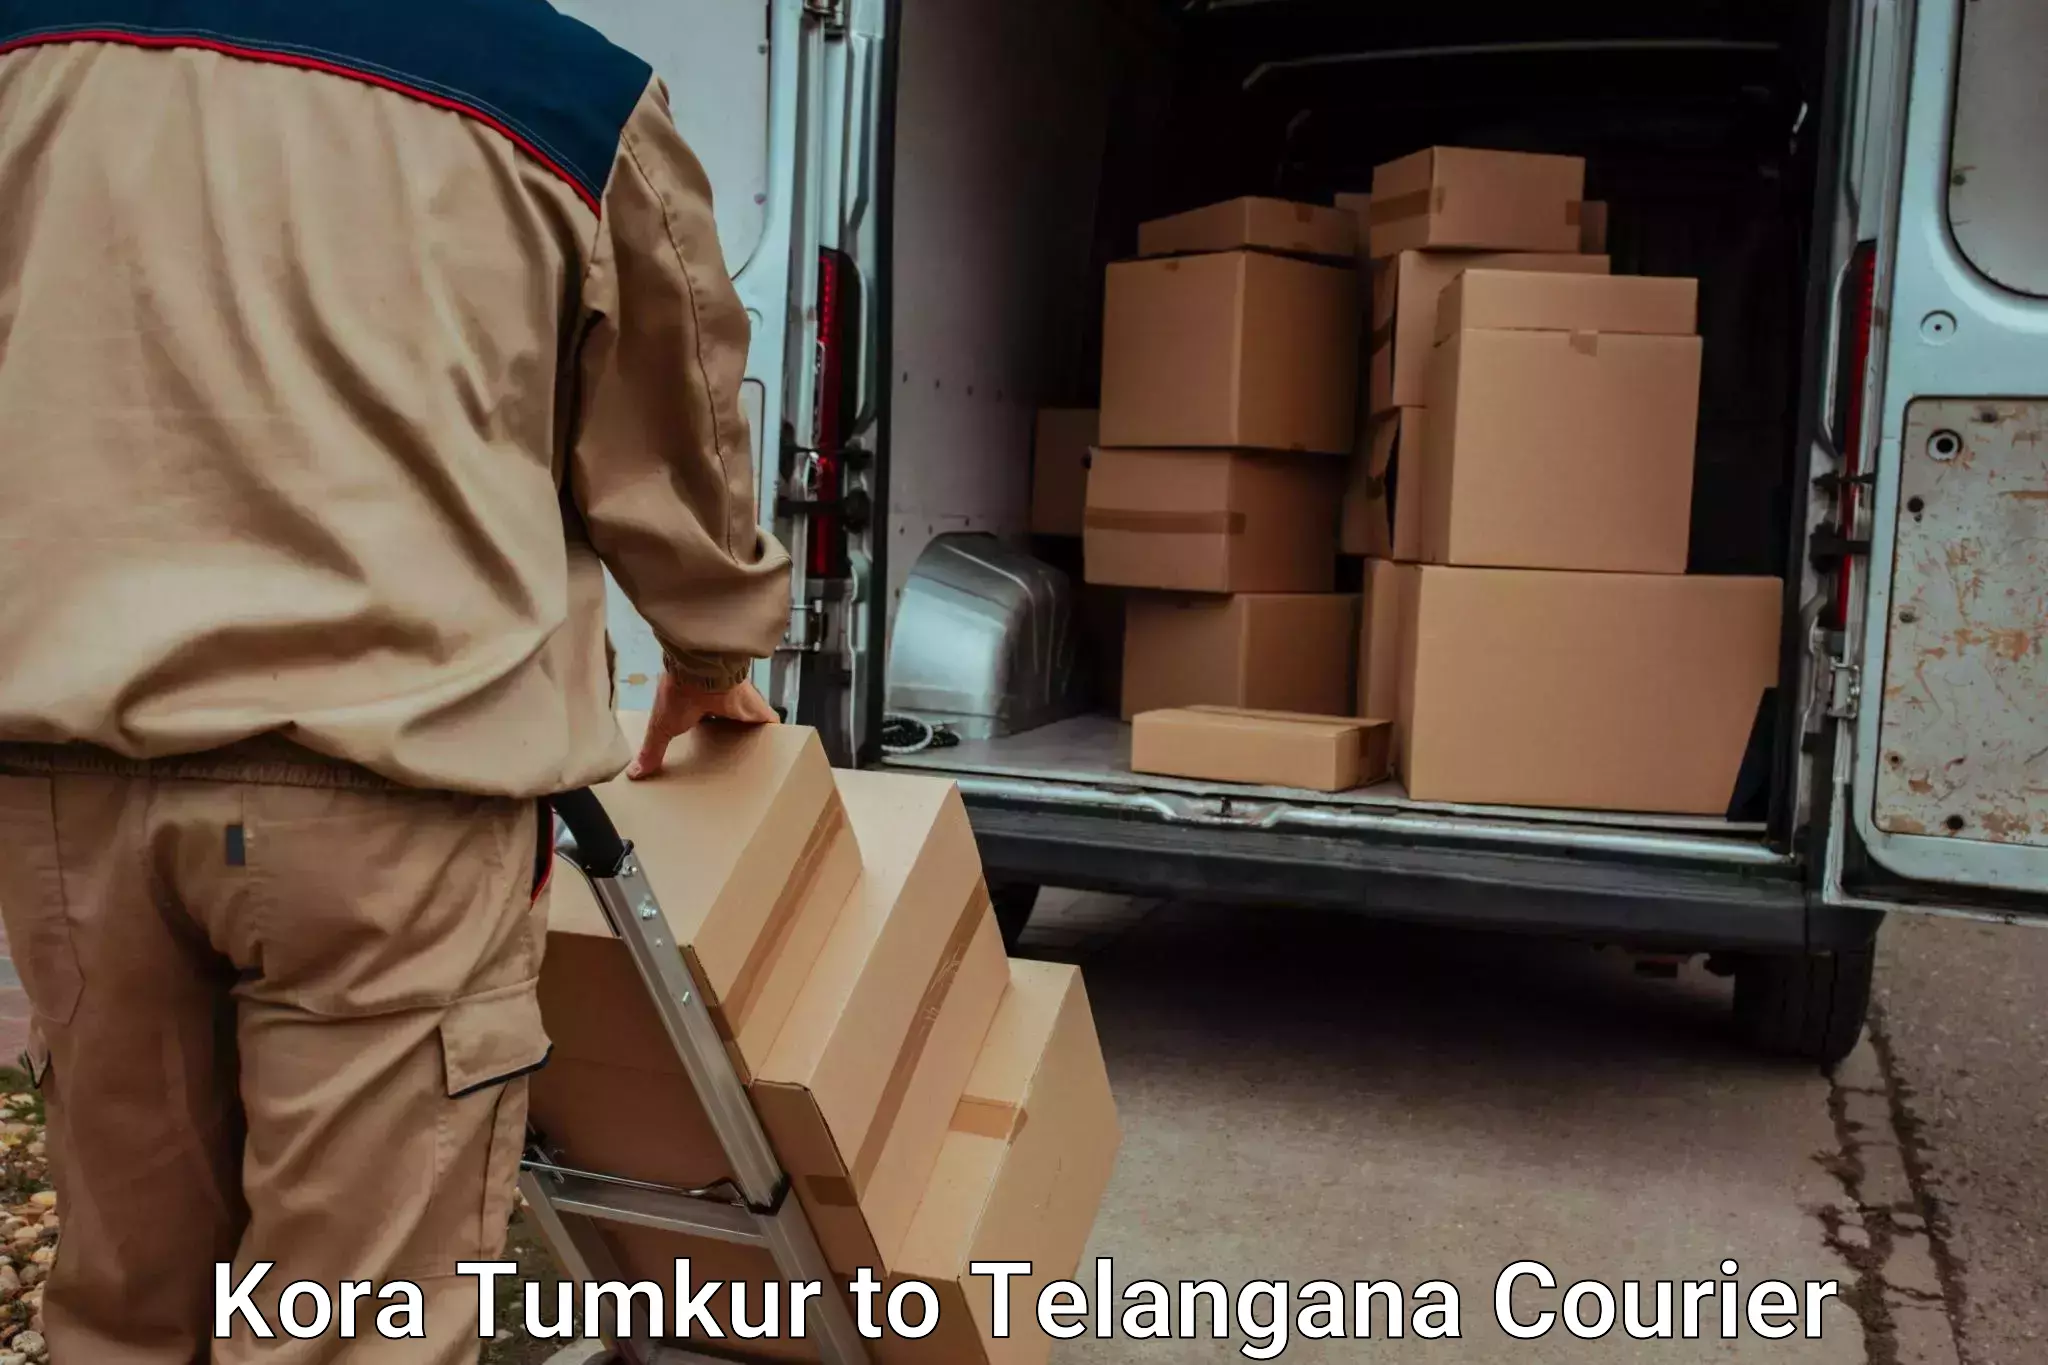 Luggage delivery app Kora Tumkur to Ramannapeta